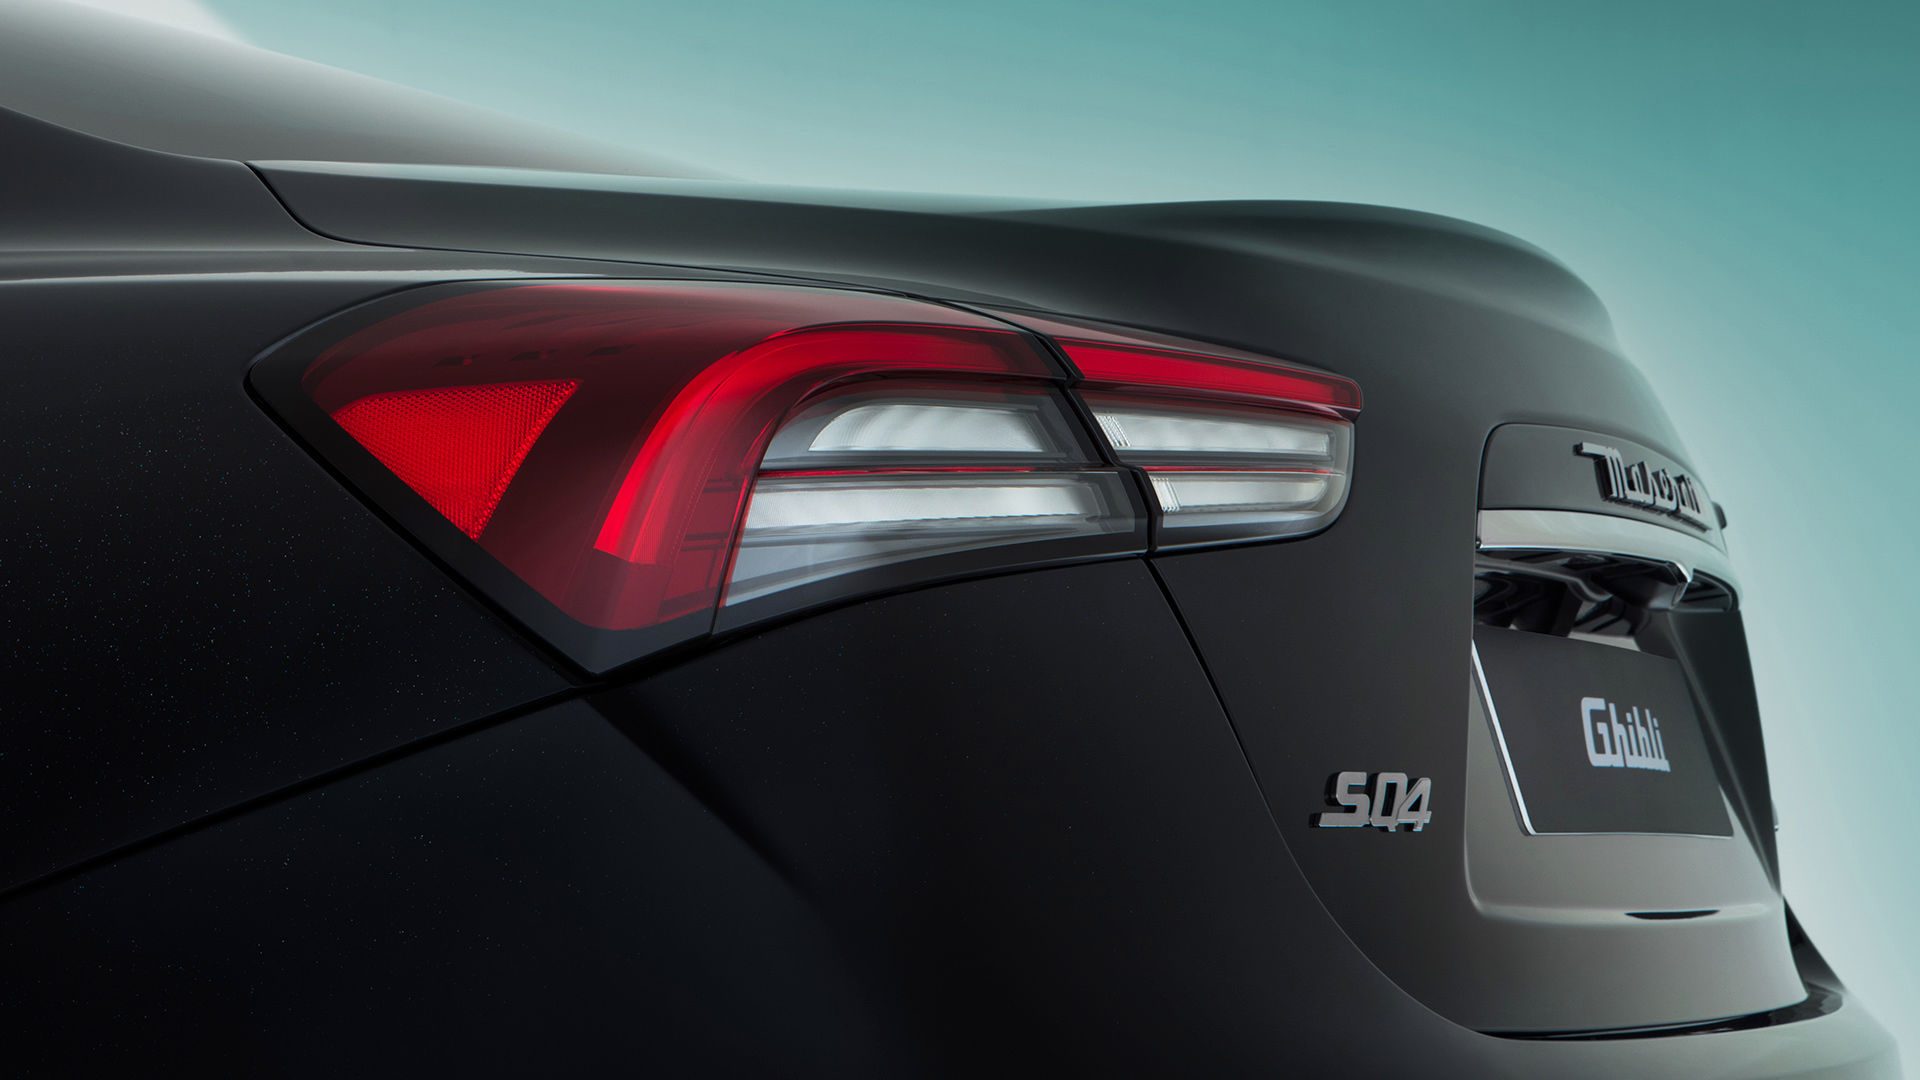 De ‘boemerang’-achterlichten zijn geïnspireerd door de lichten van de Maserati 3200 GT, ontworpen door Giugiaro.